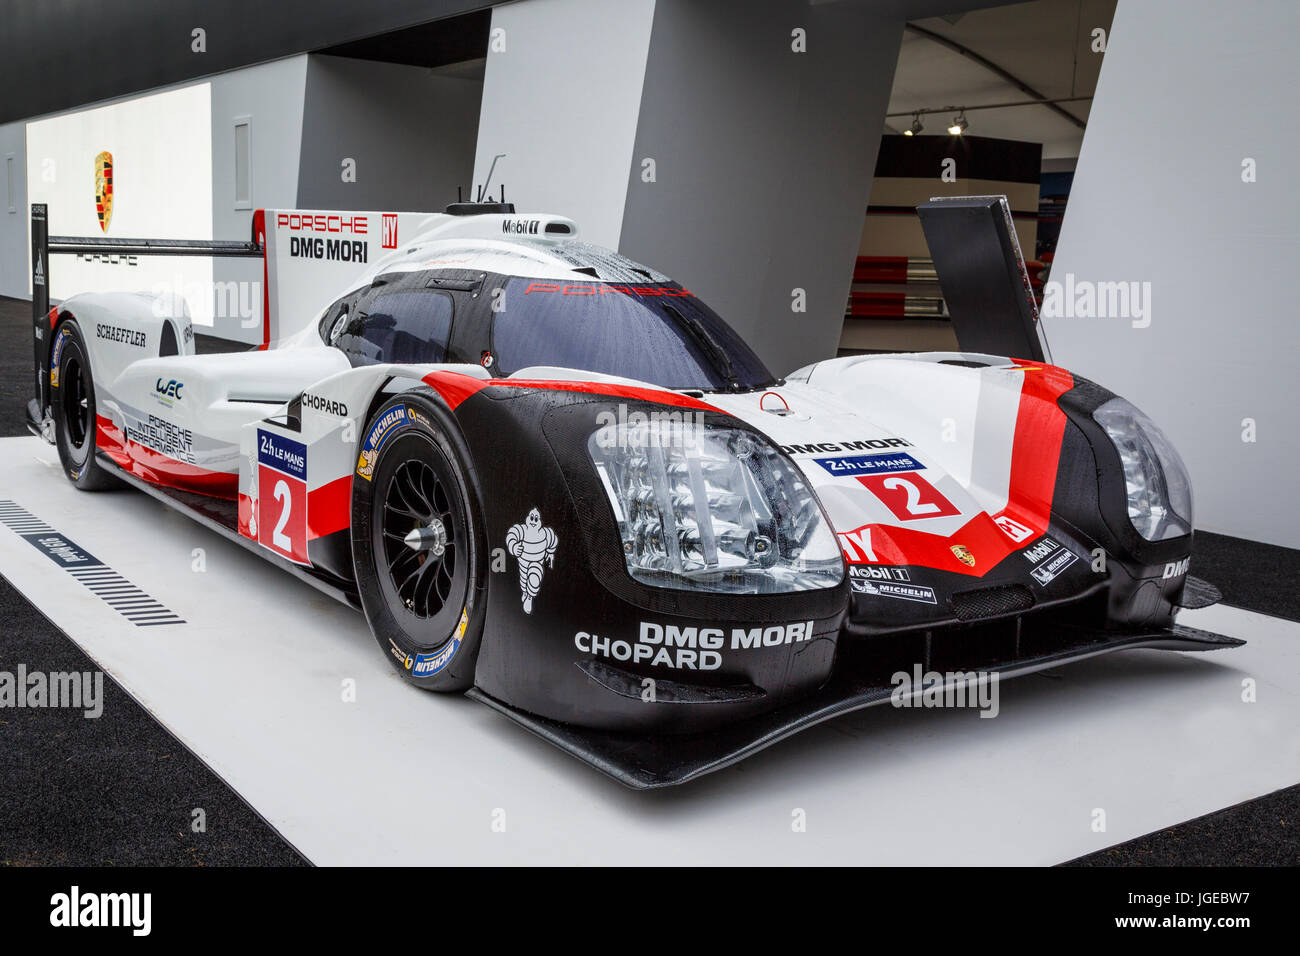 Porsche 919 Hybrid Lmp1 Le Mans Sieger Des Rennens Auf Dem Display Auf